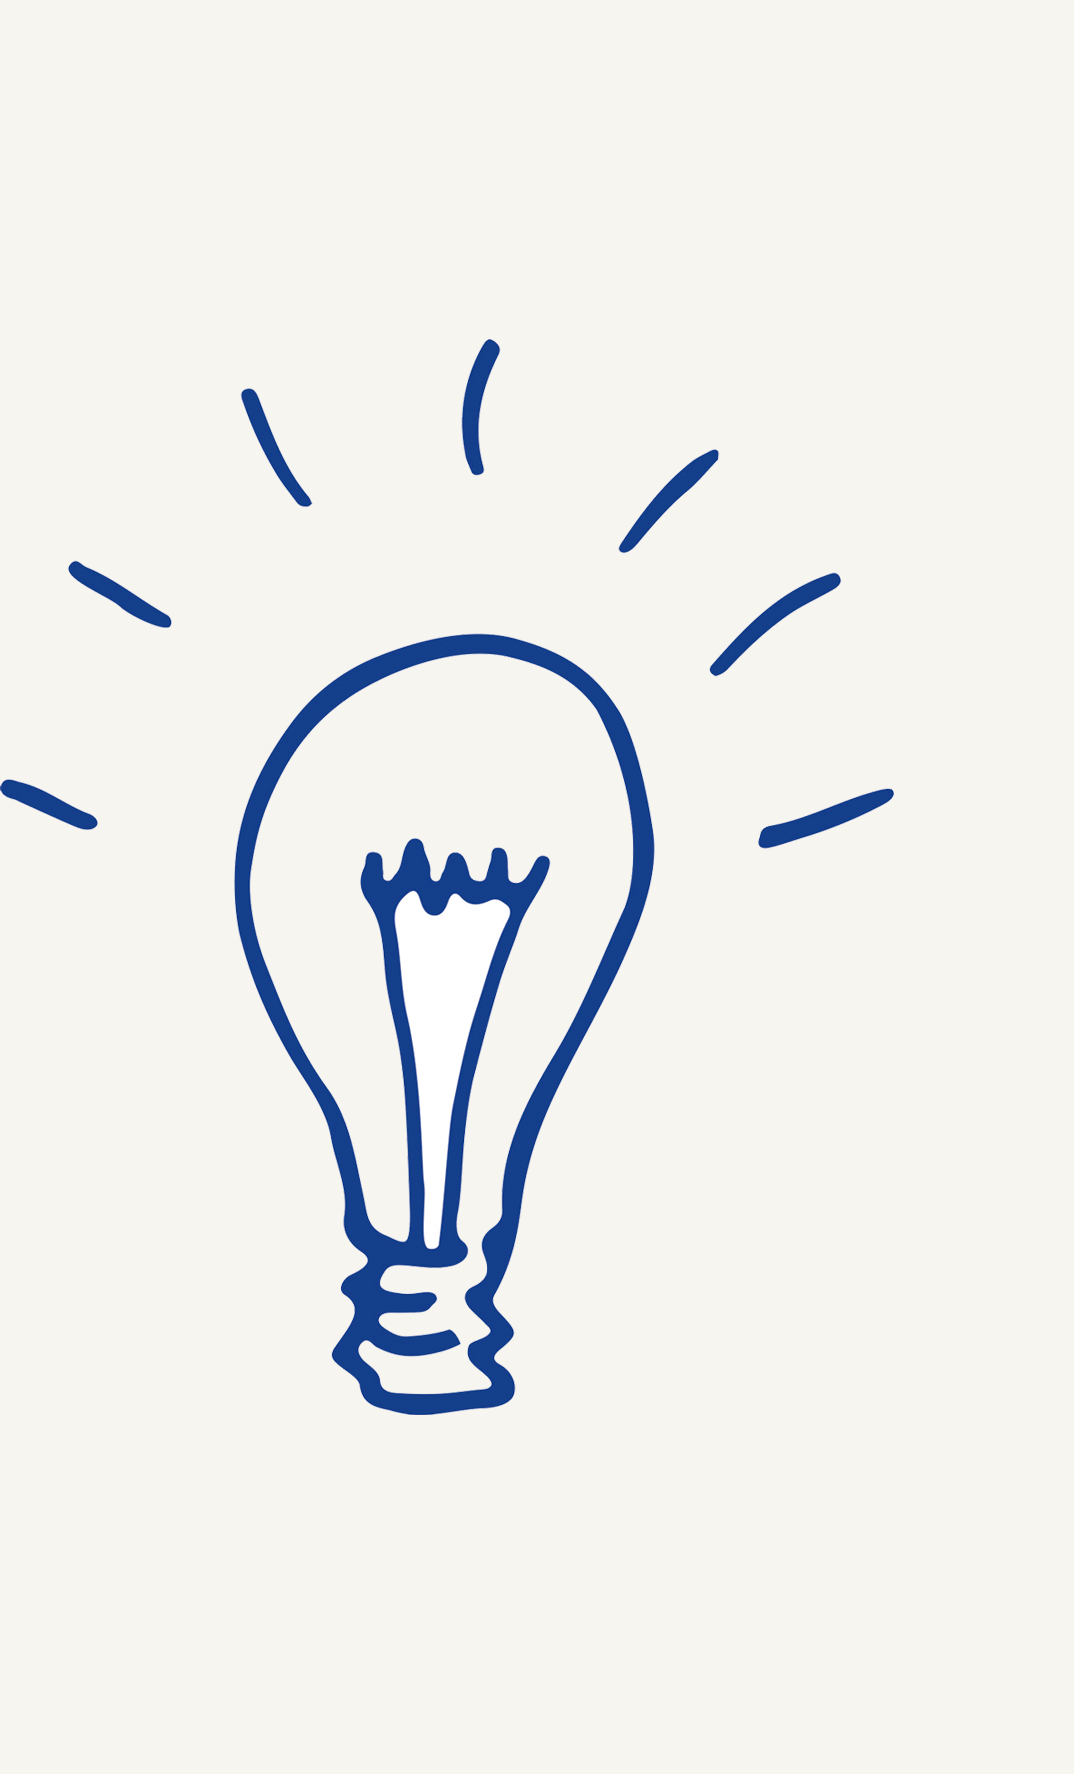 sketch of a light bulb